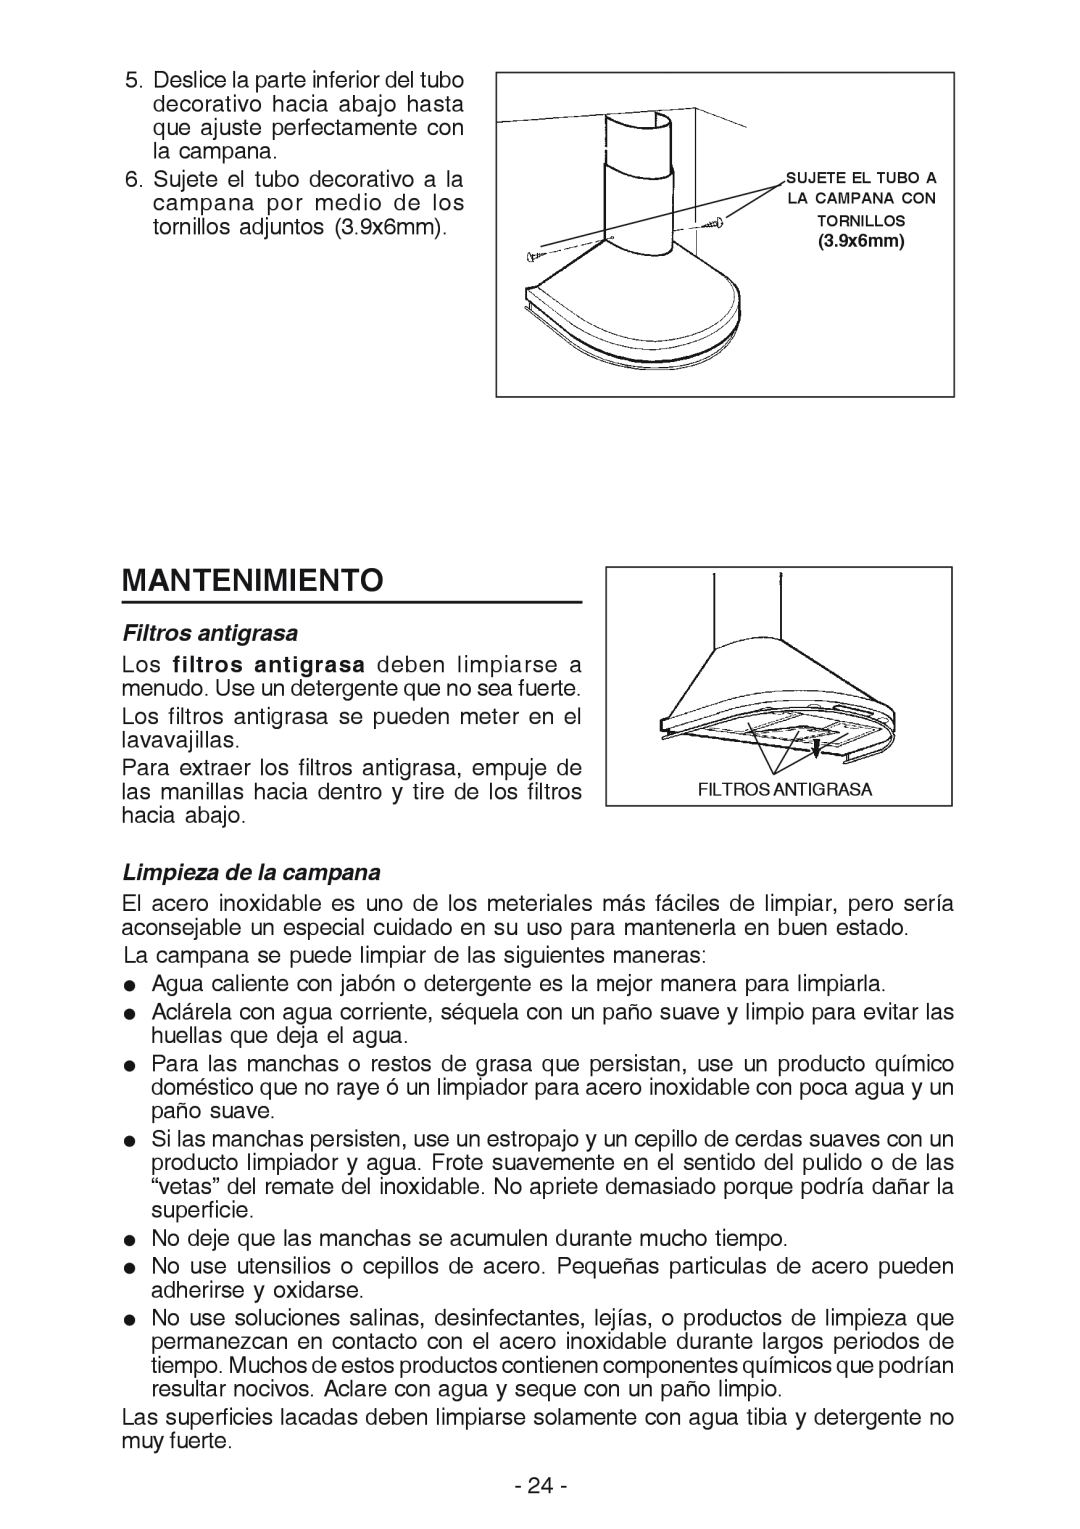 Best K15 manual Mantenimiento, Filtros antigrasa, Limpieza de la campana 